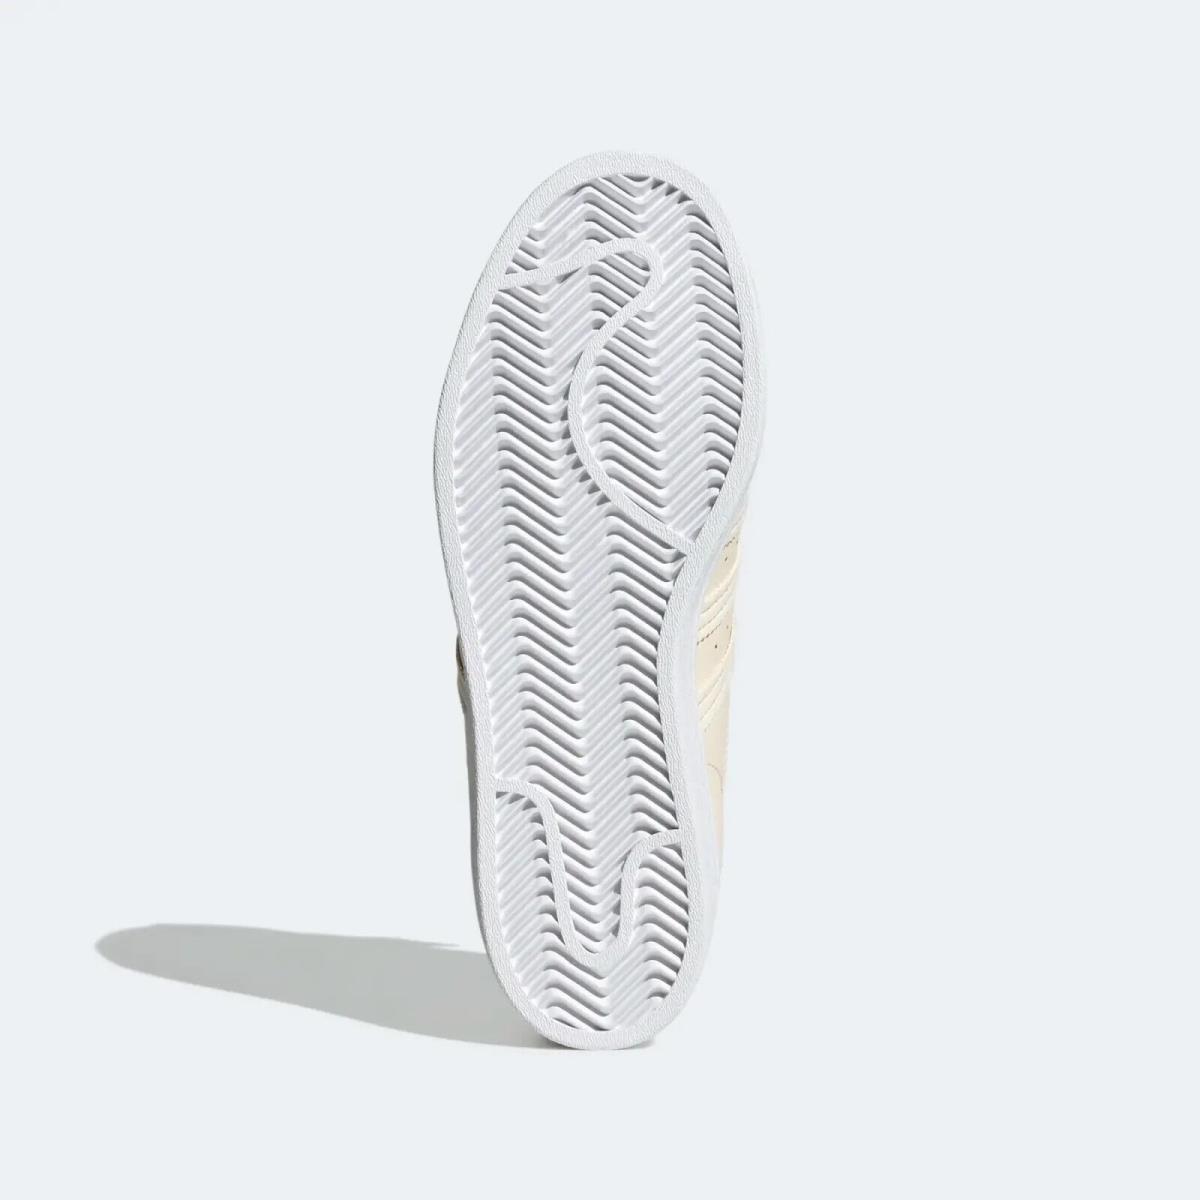 Adidas shoes SUPERSTAR - Beige/White 12